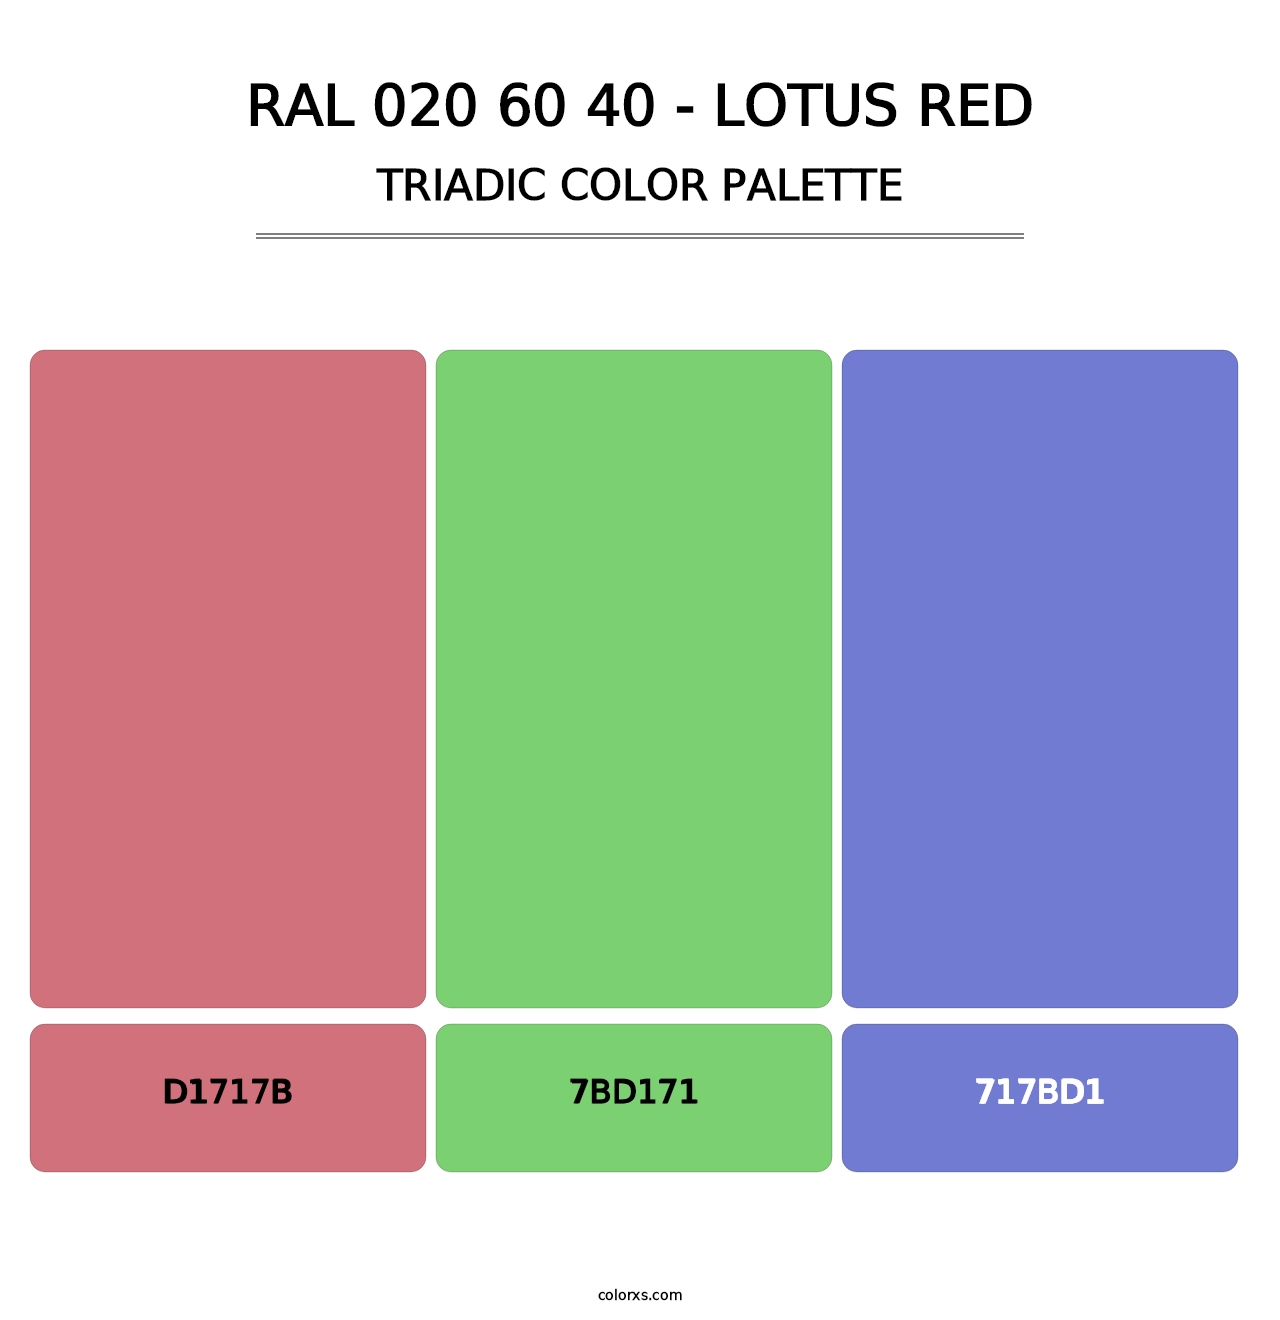 RAL 020 60 40 - Lotus Red - Triadic Color Palette